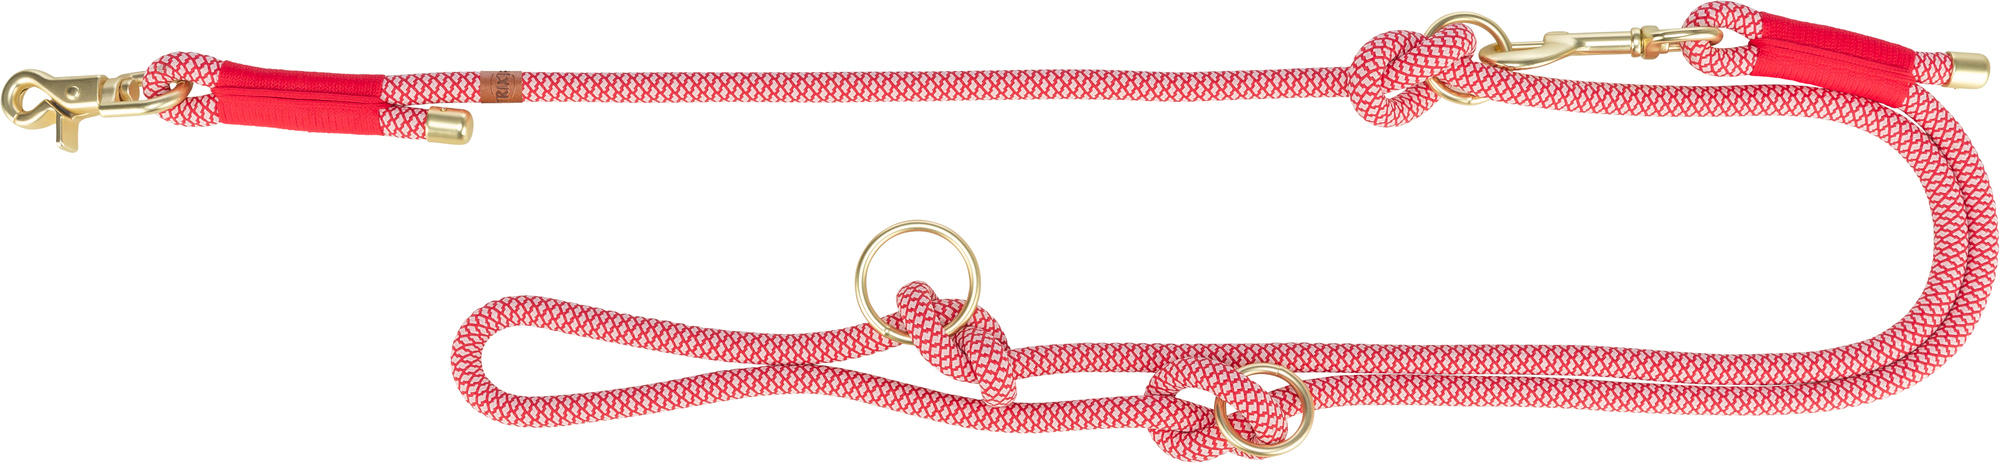 Leine Soft Rope Trixie - 2m - verschiedene Farben